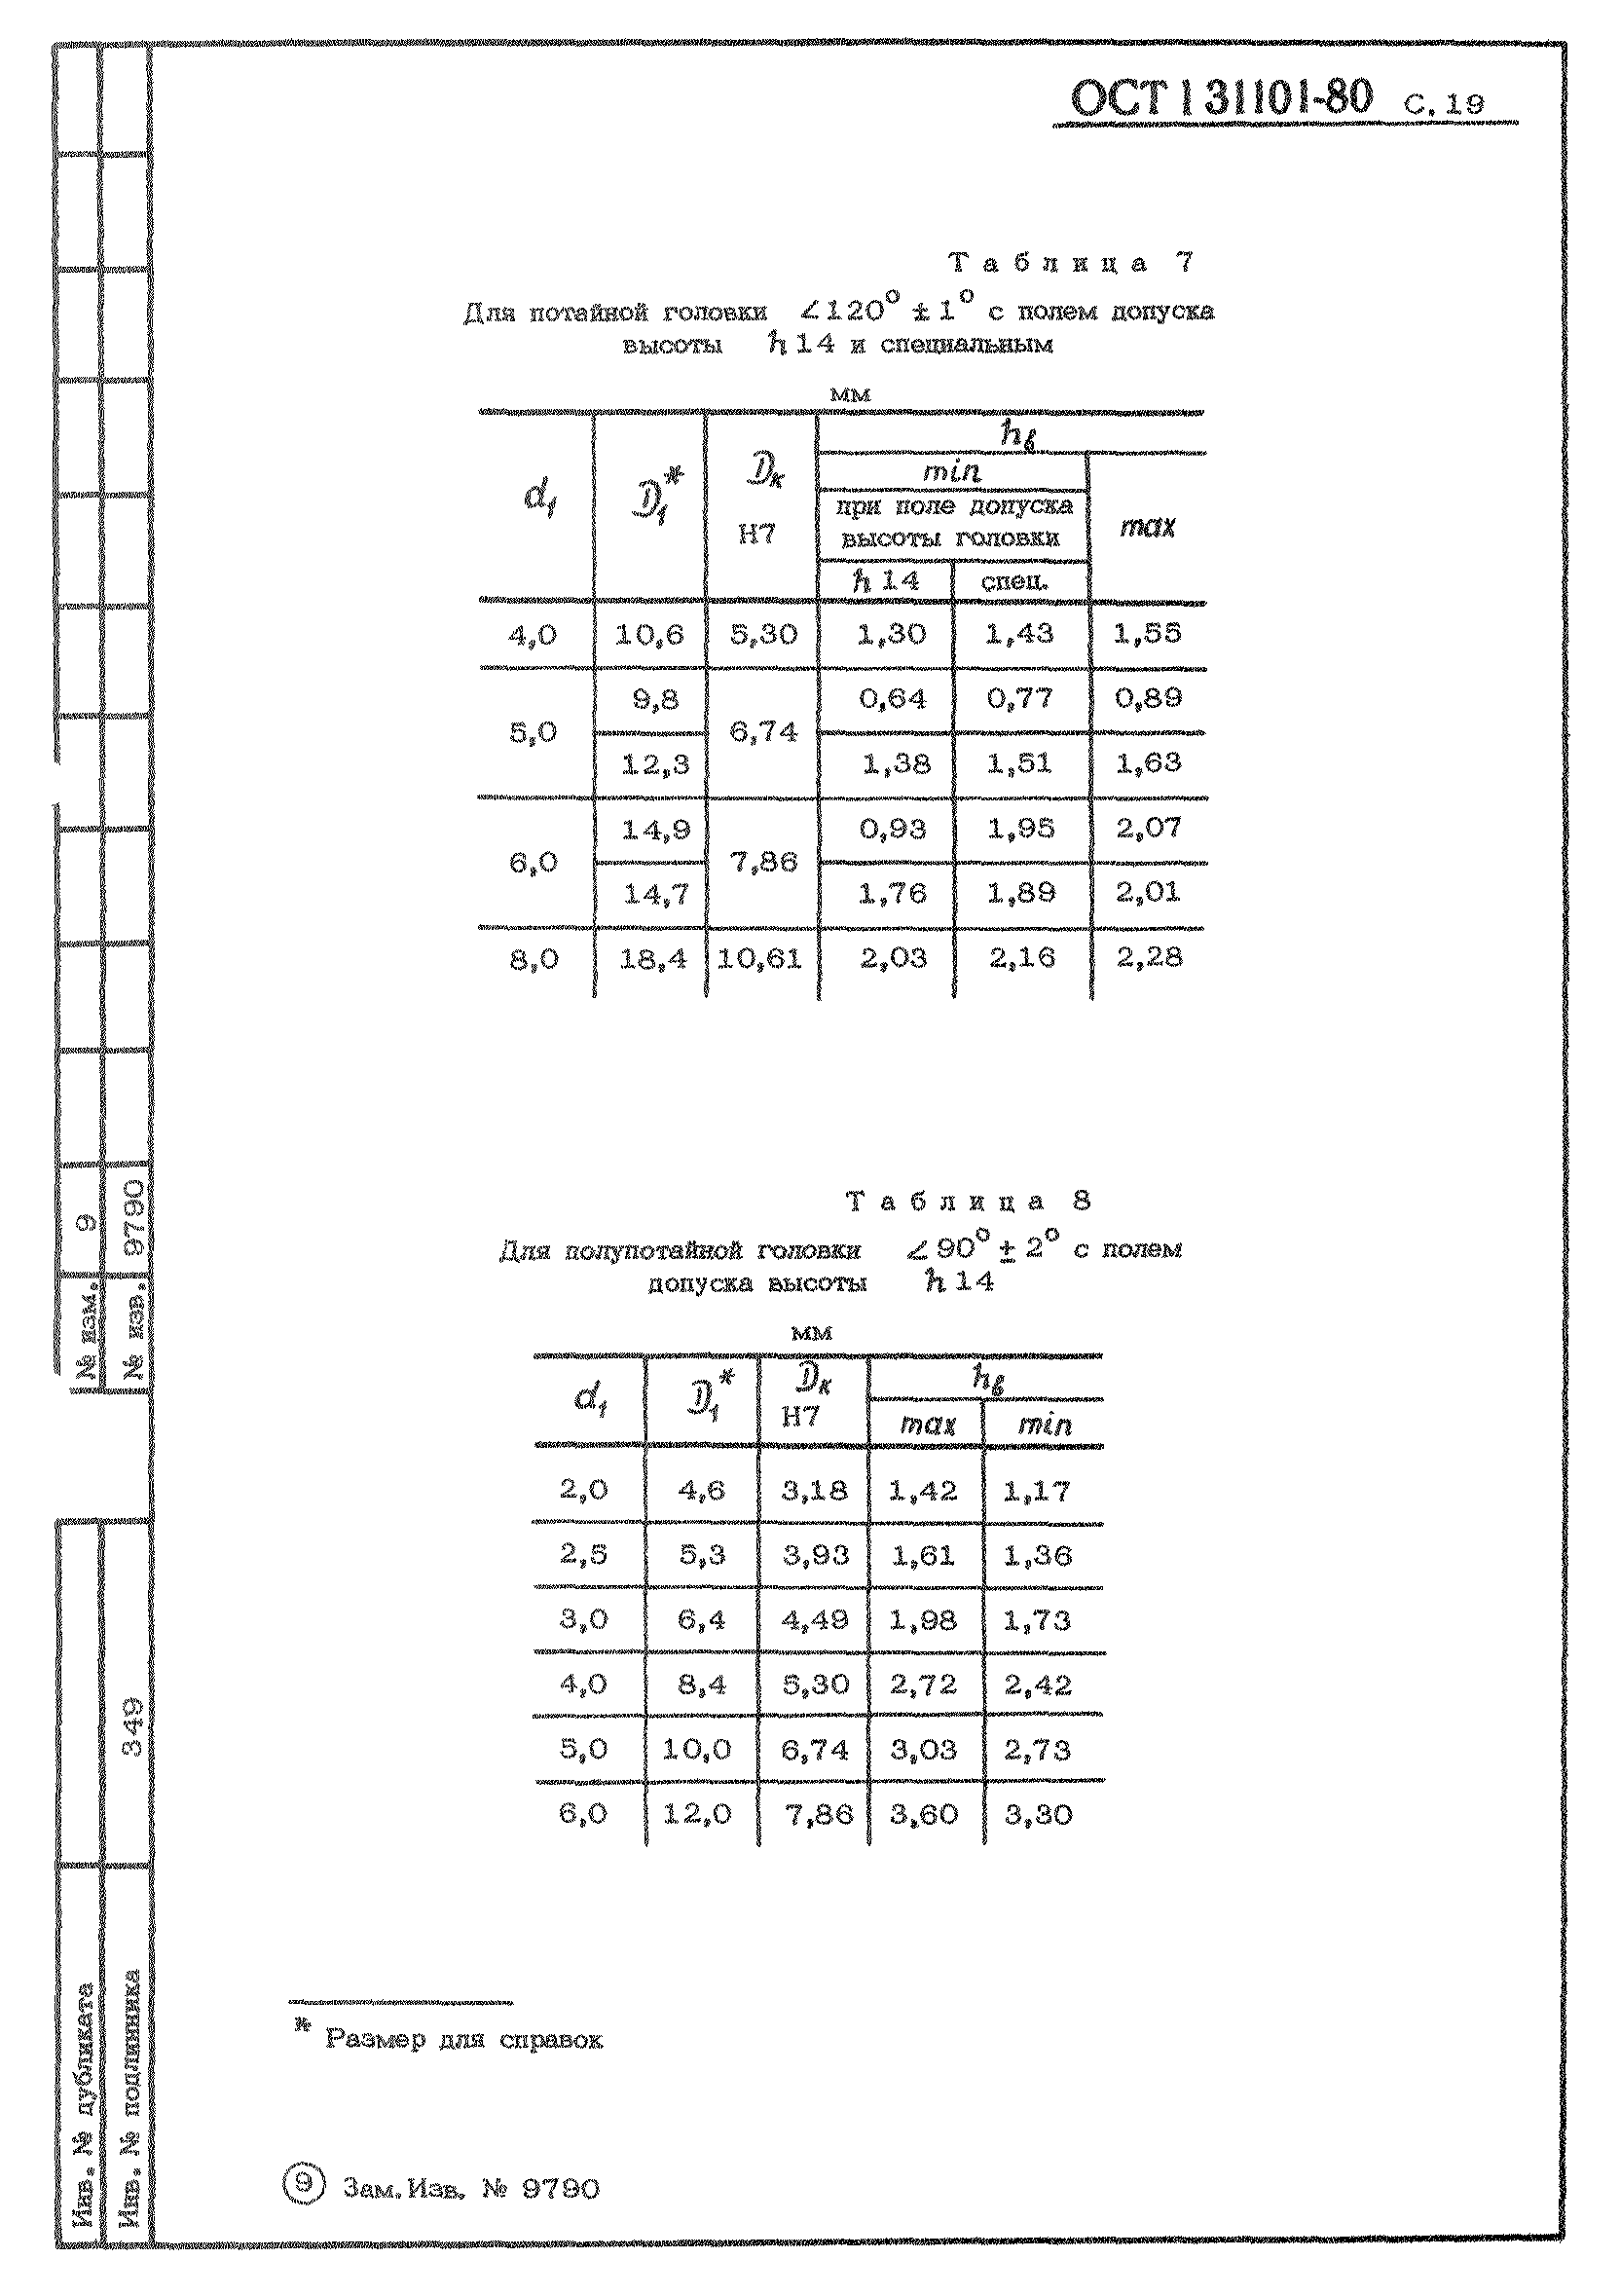 ОСТ 1 31101-80